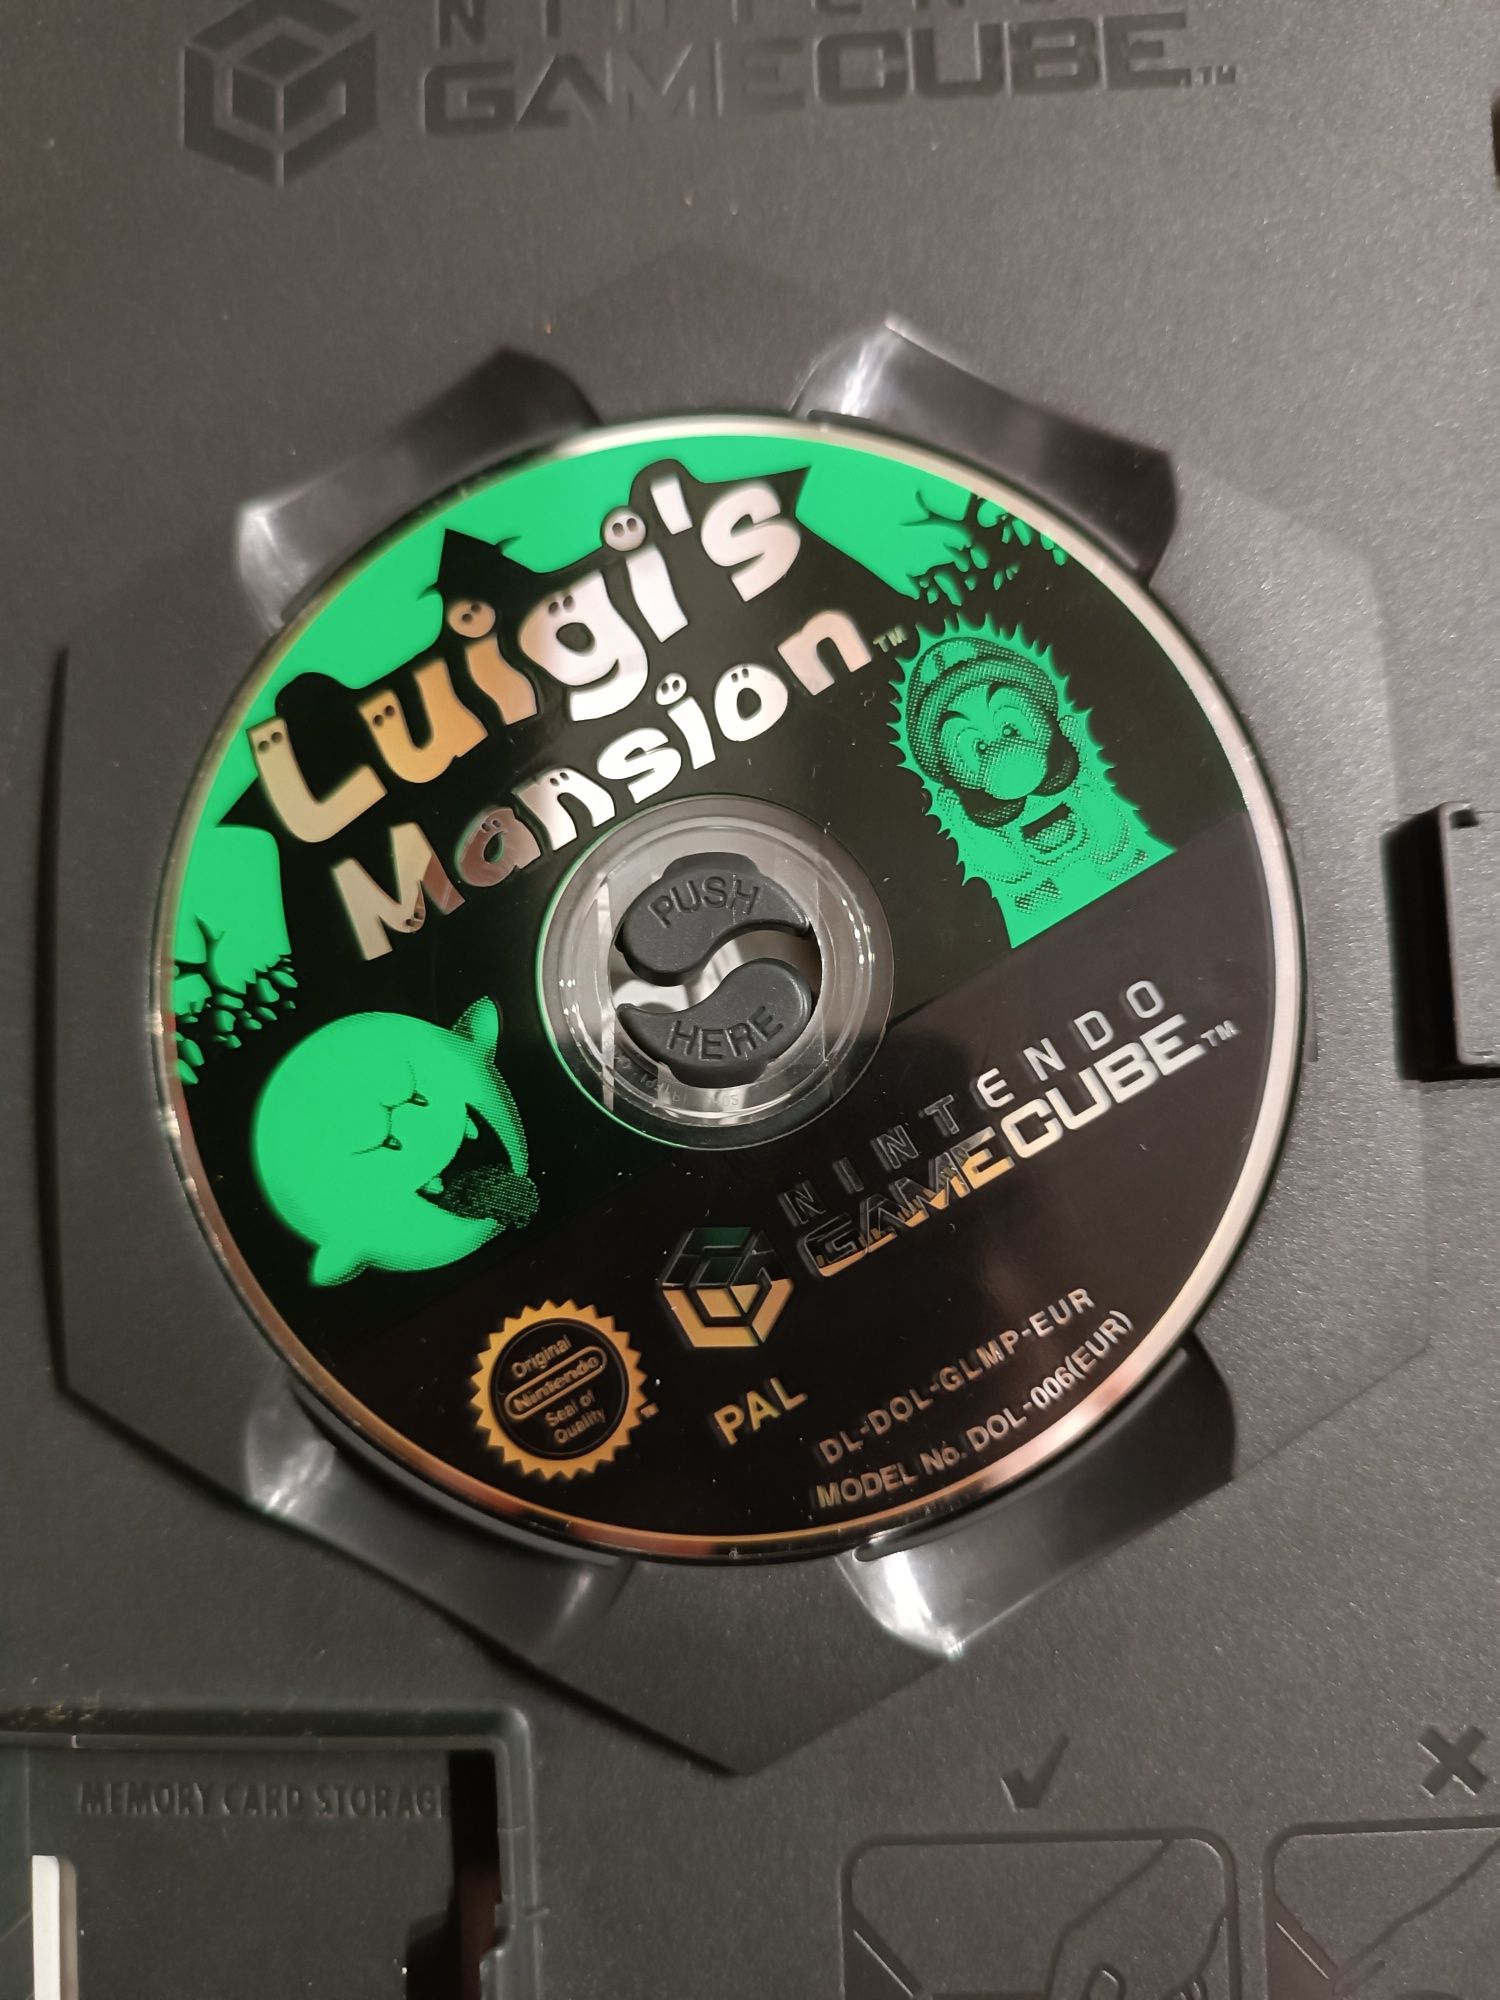 Luigi's Mansion Nintendo Gamecube